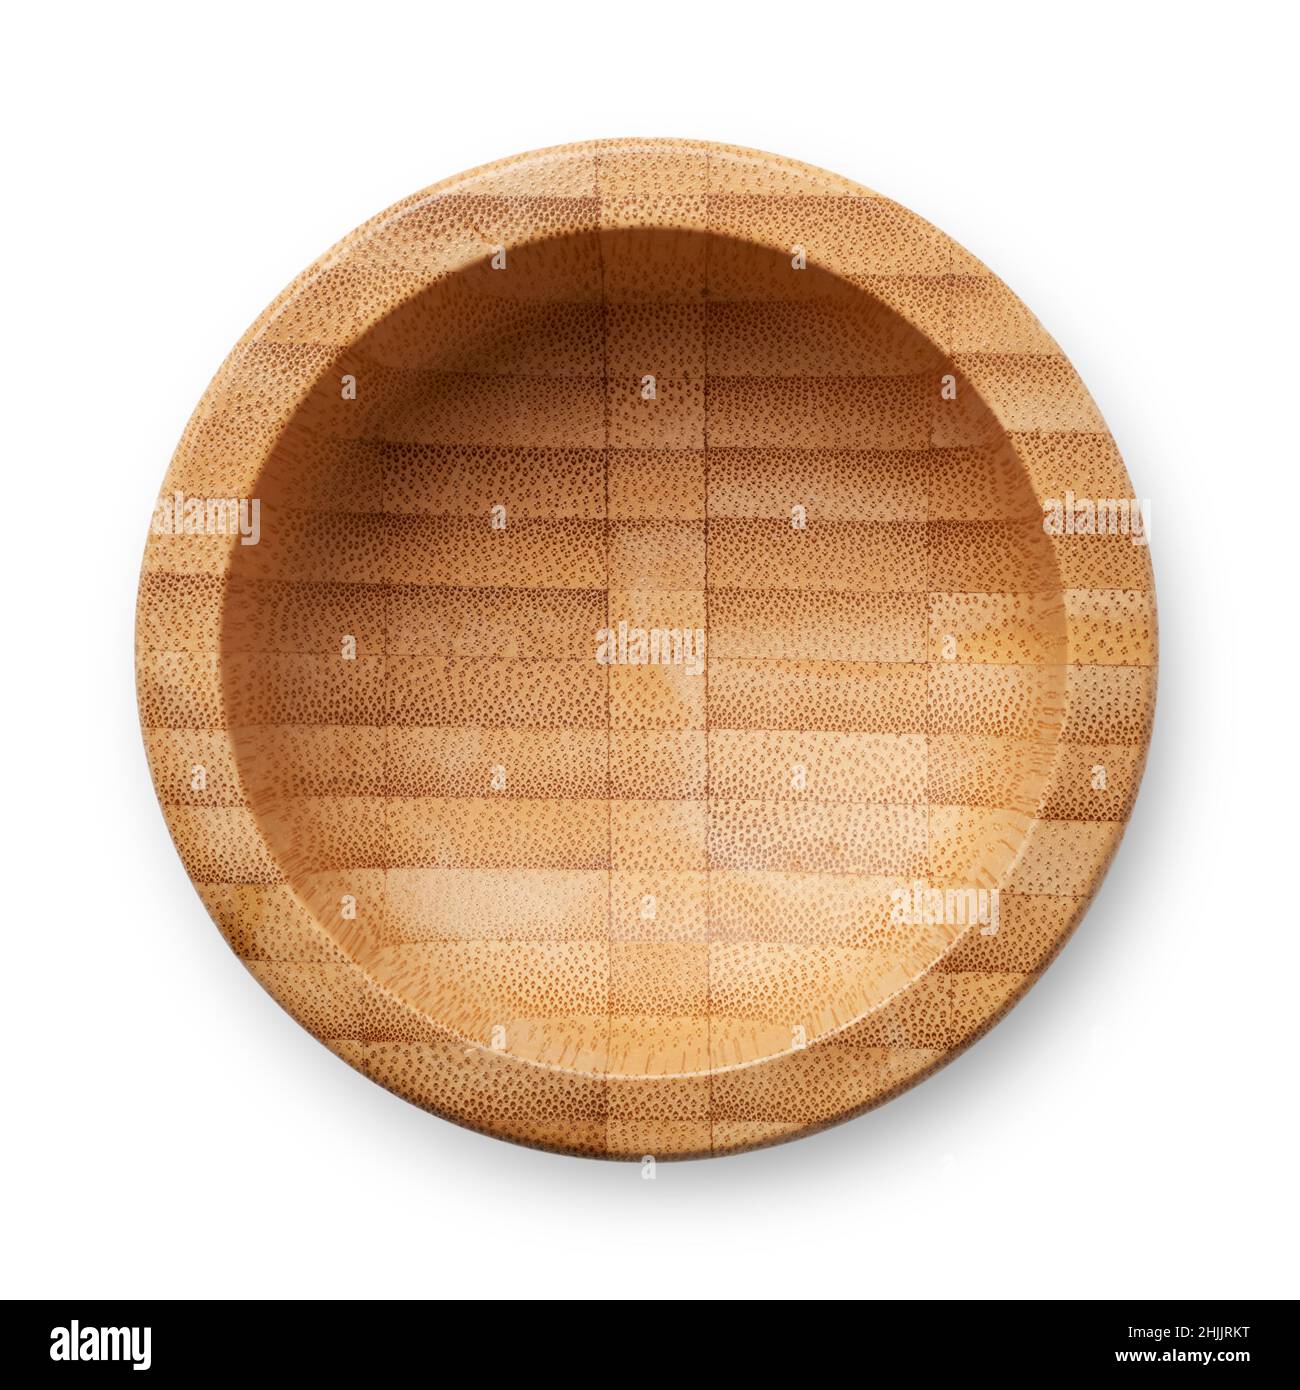 Oggetti isolati: Ciotola di legno vuota, utensili da cucina tradizionali, su sfondo bianco Foto Stock